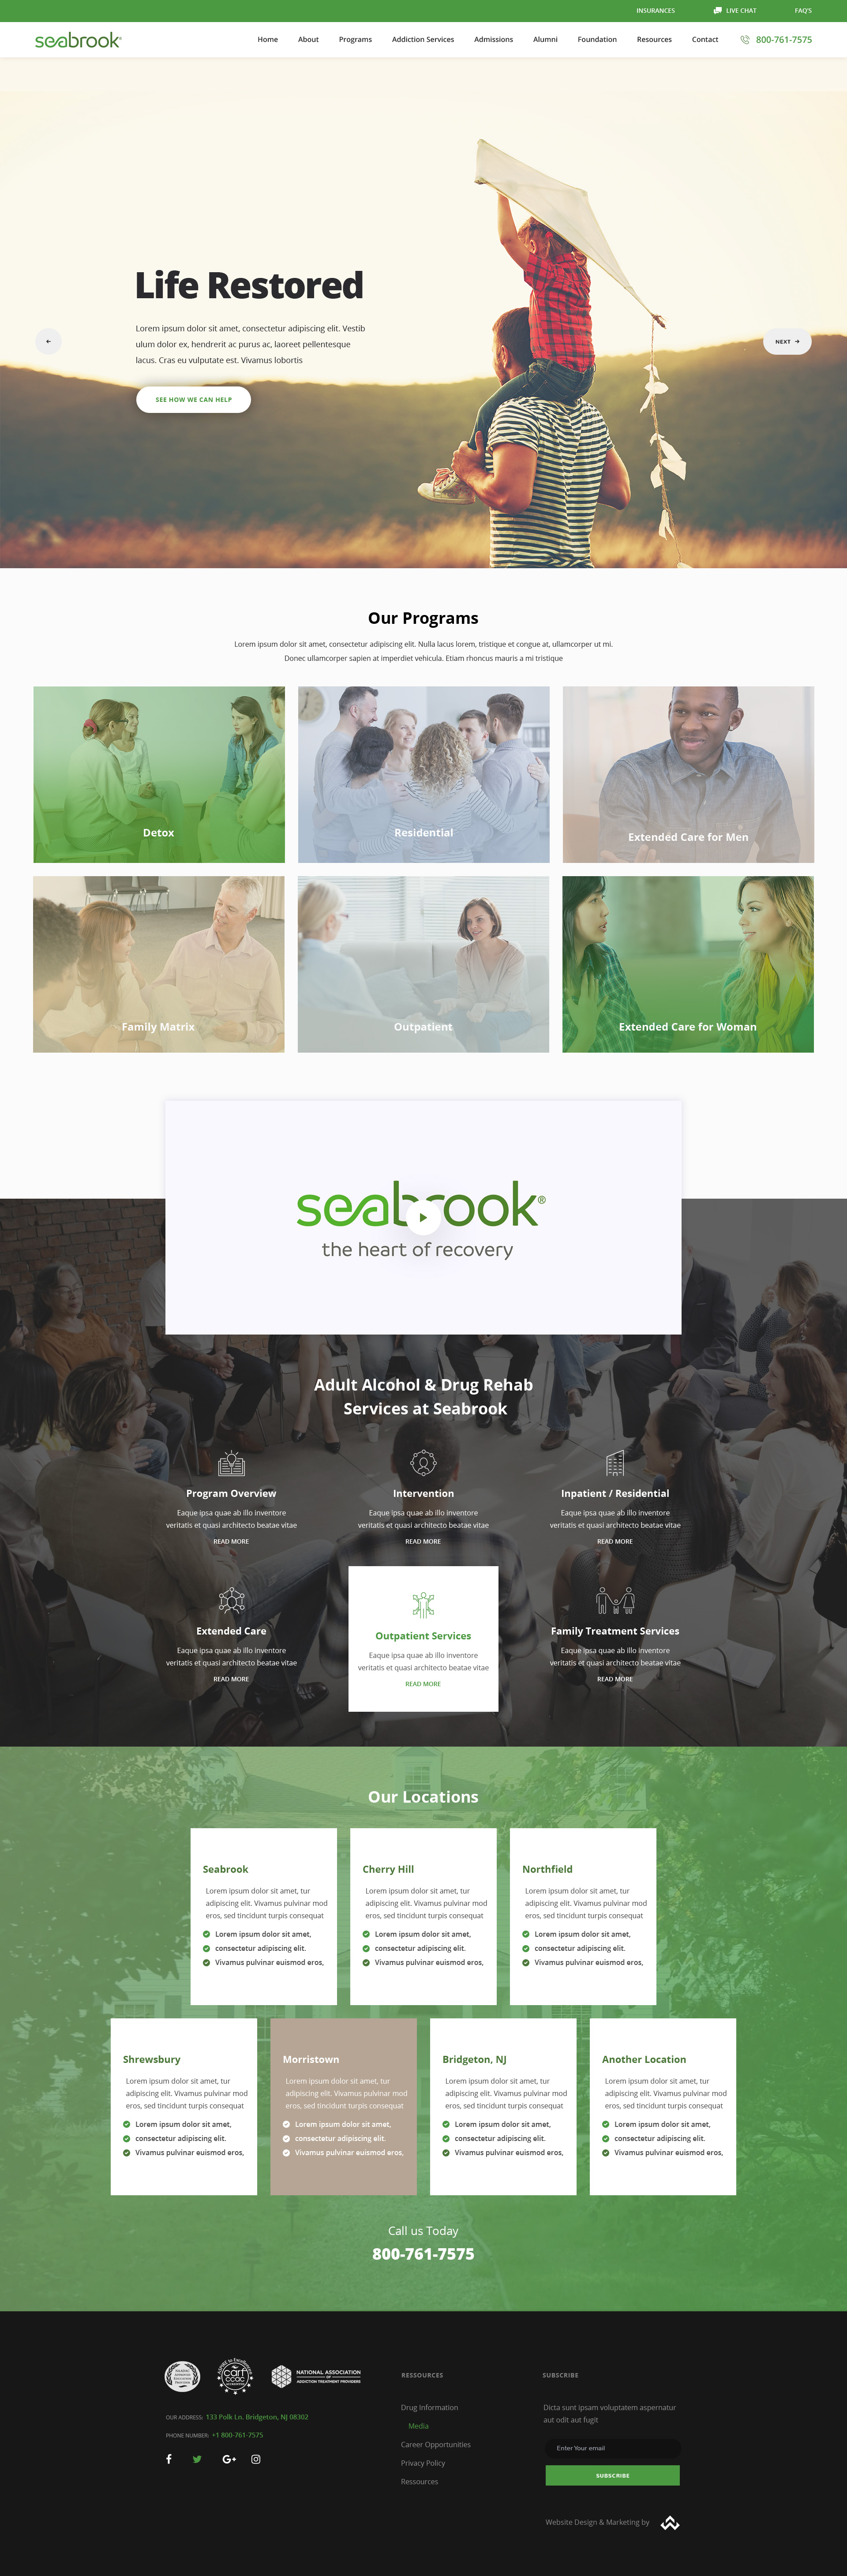 seabrook website